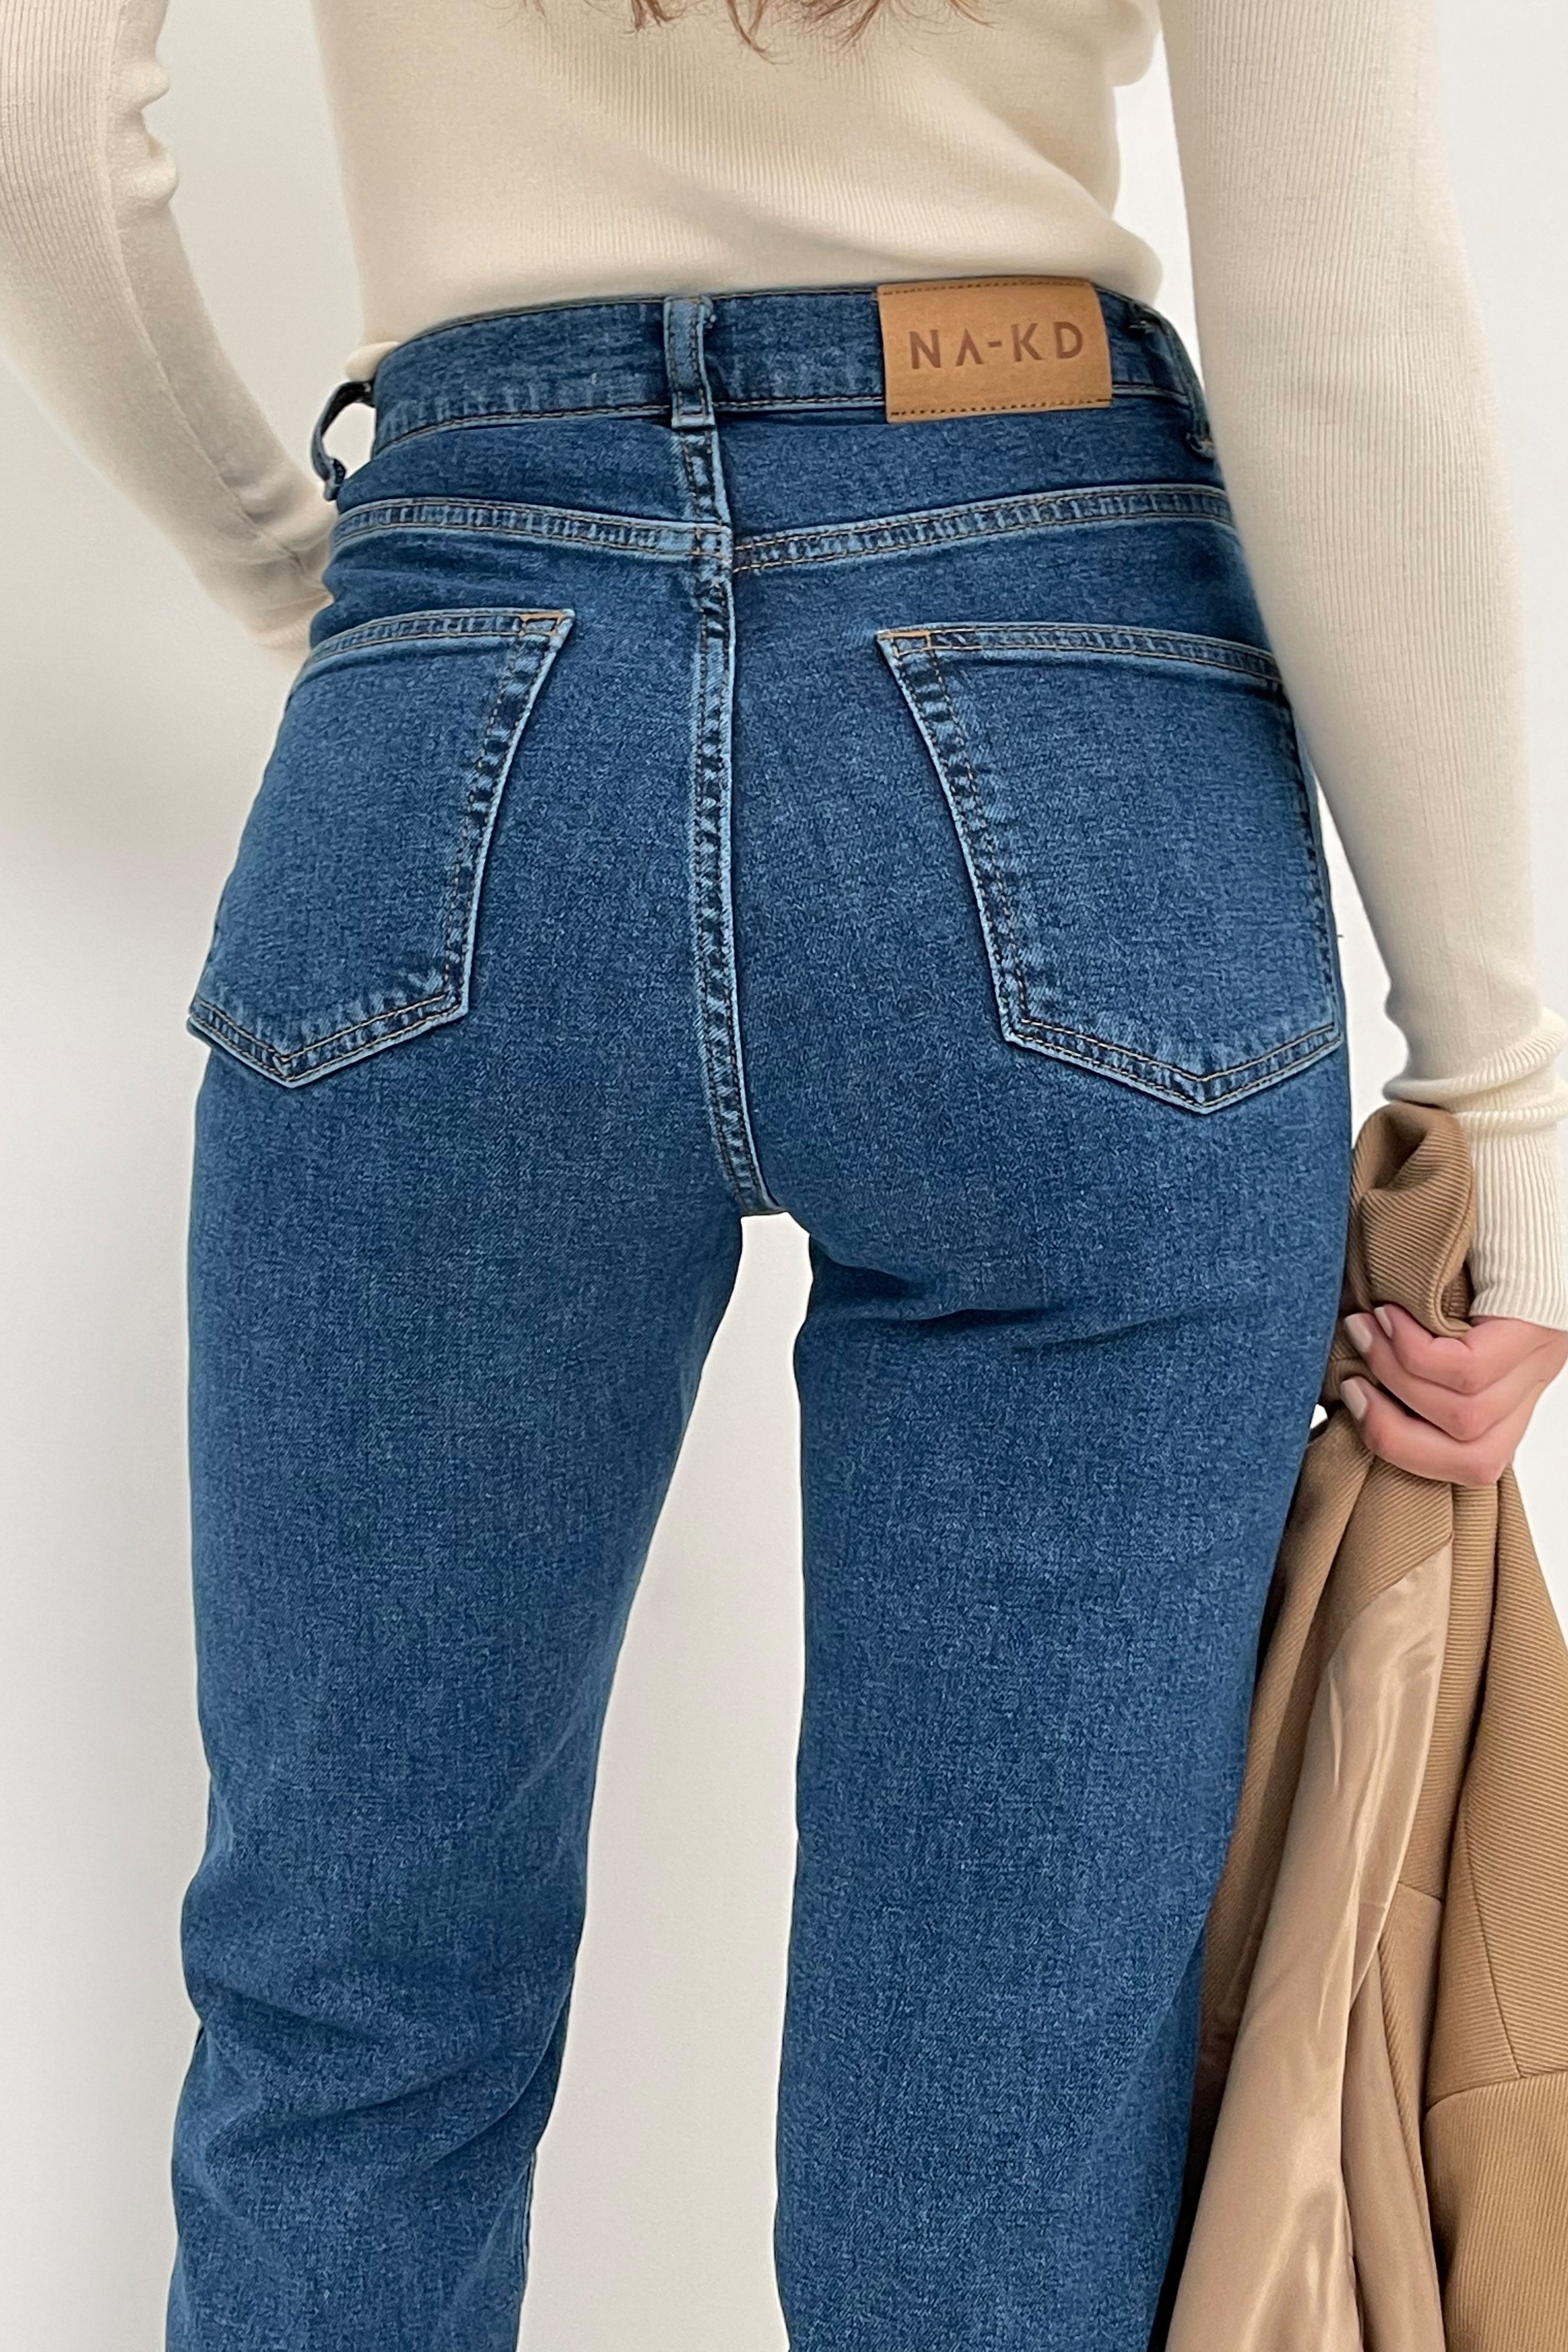 Blue Organische rechte high waist jeans